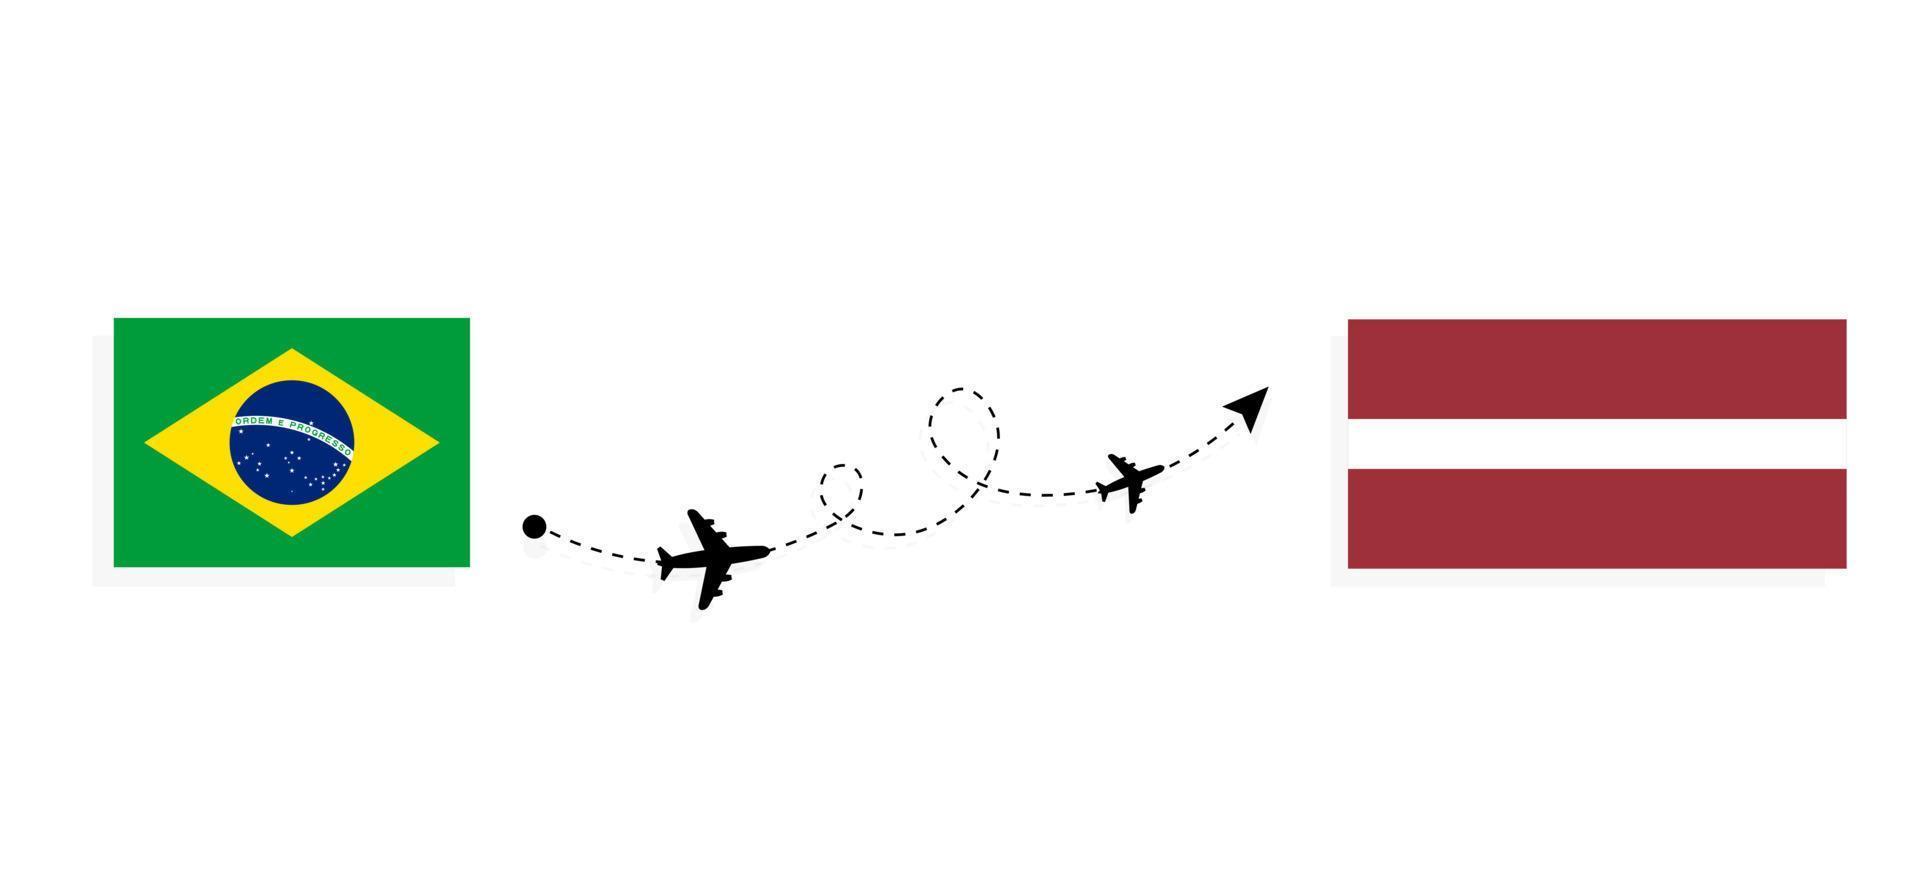 flyg och resor från Brasilien till Lettland med passagerarflygplan vektor